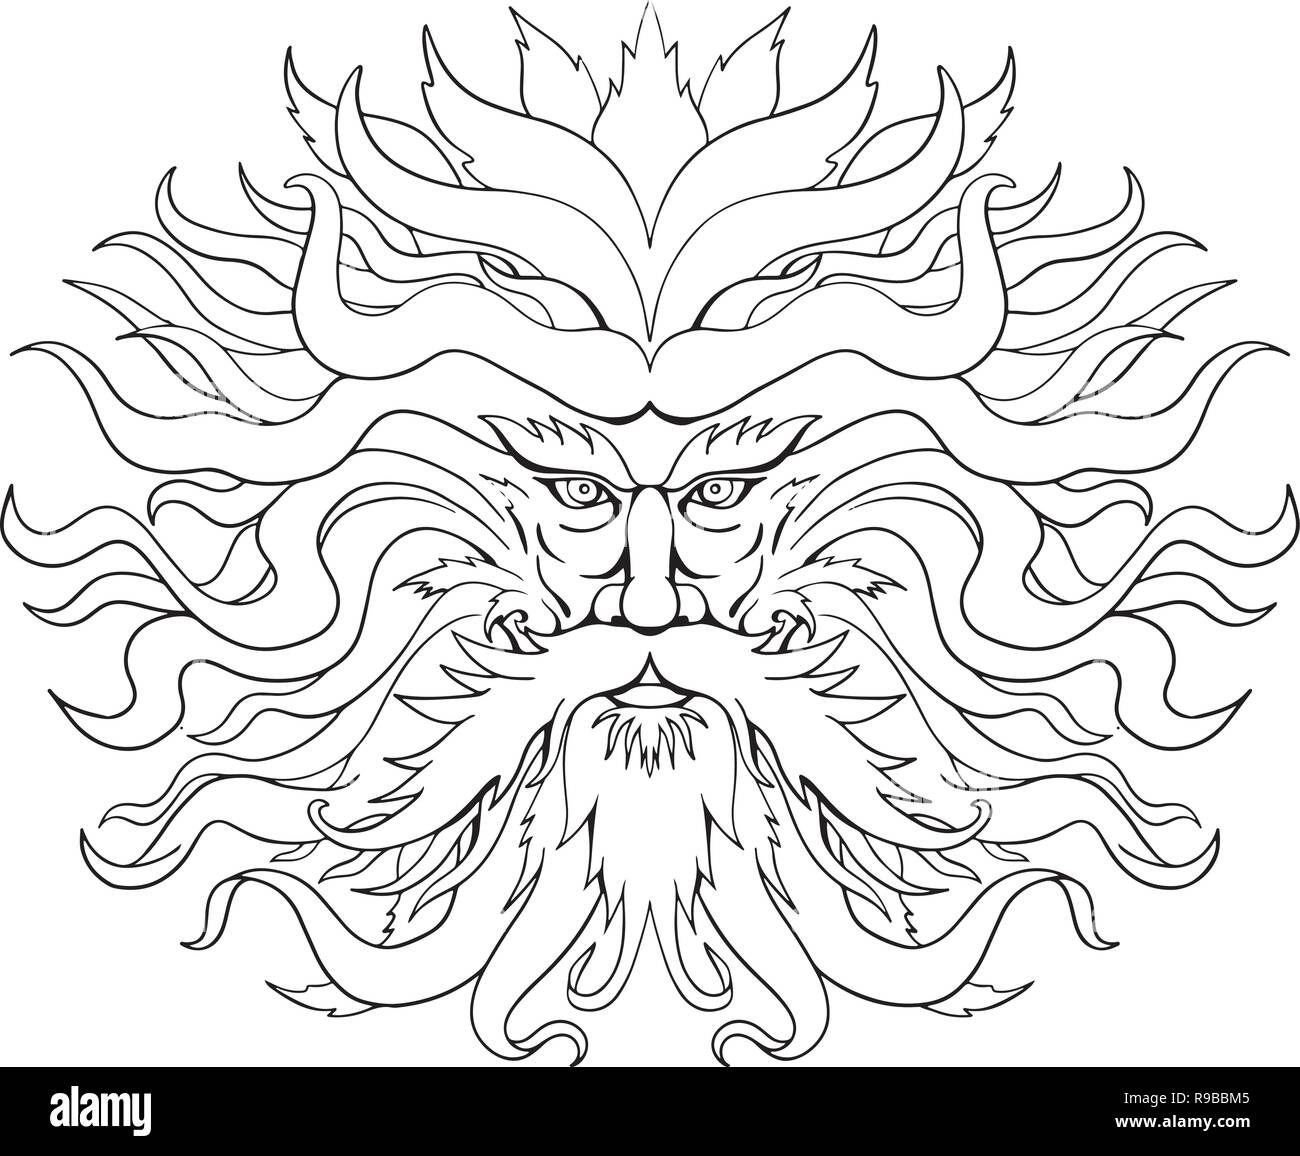 Zeichnung Skizze stil Abbildung von Helios, dem Gott und Personifizierung der Sonne in der Griechischen Mythologie, mit Haaren wie feurige Strahlen der Sonne auf isolat Stock Vektor